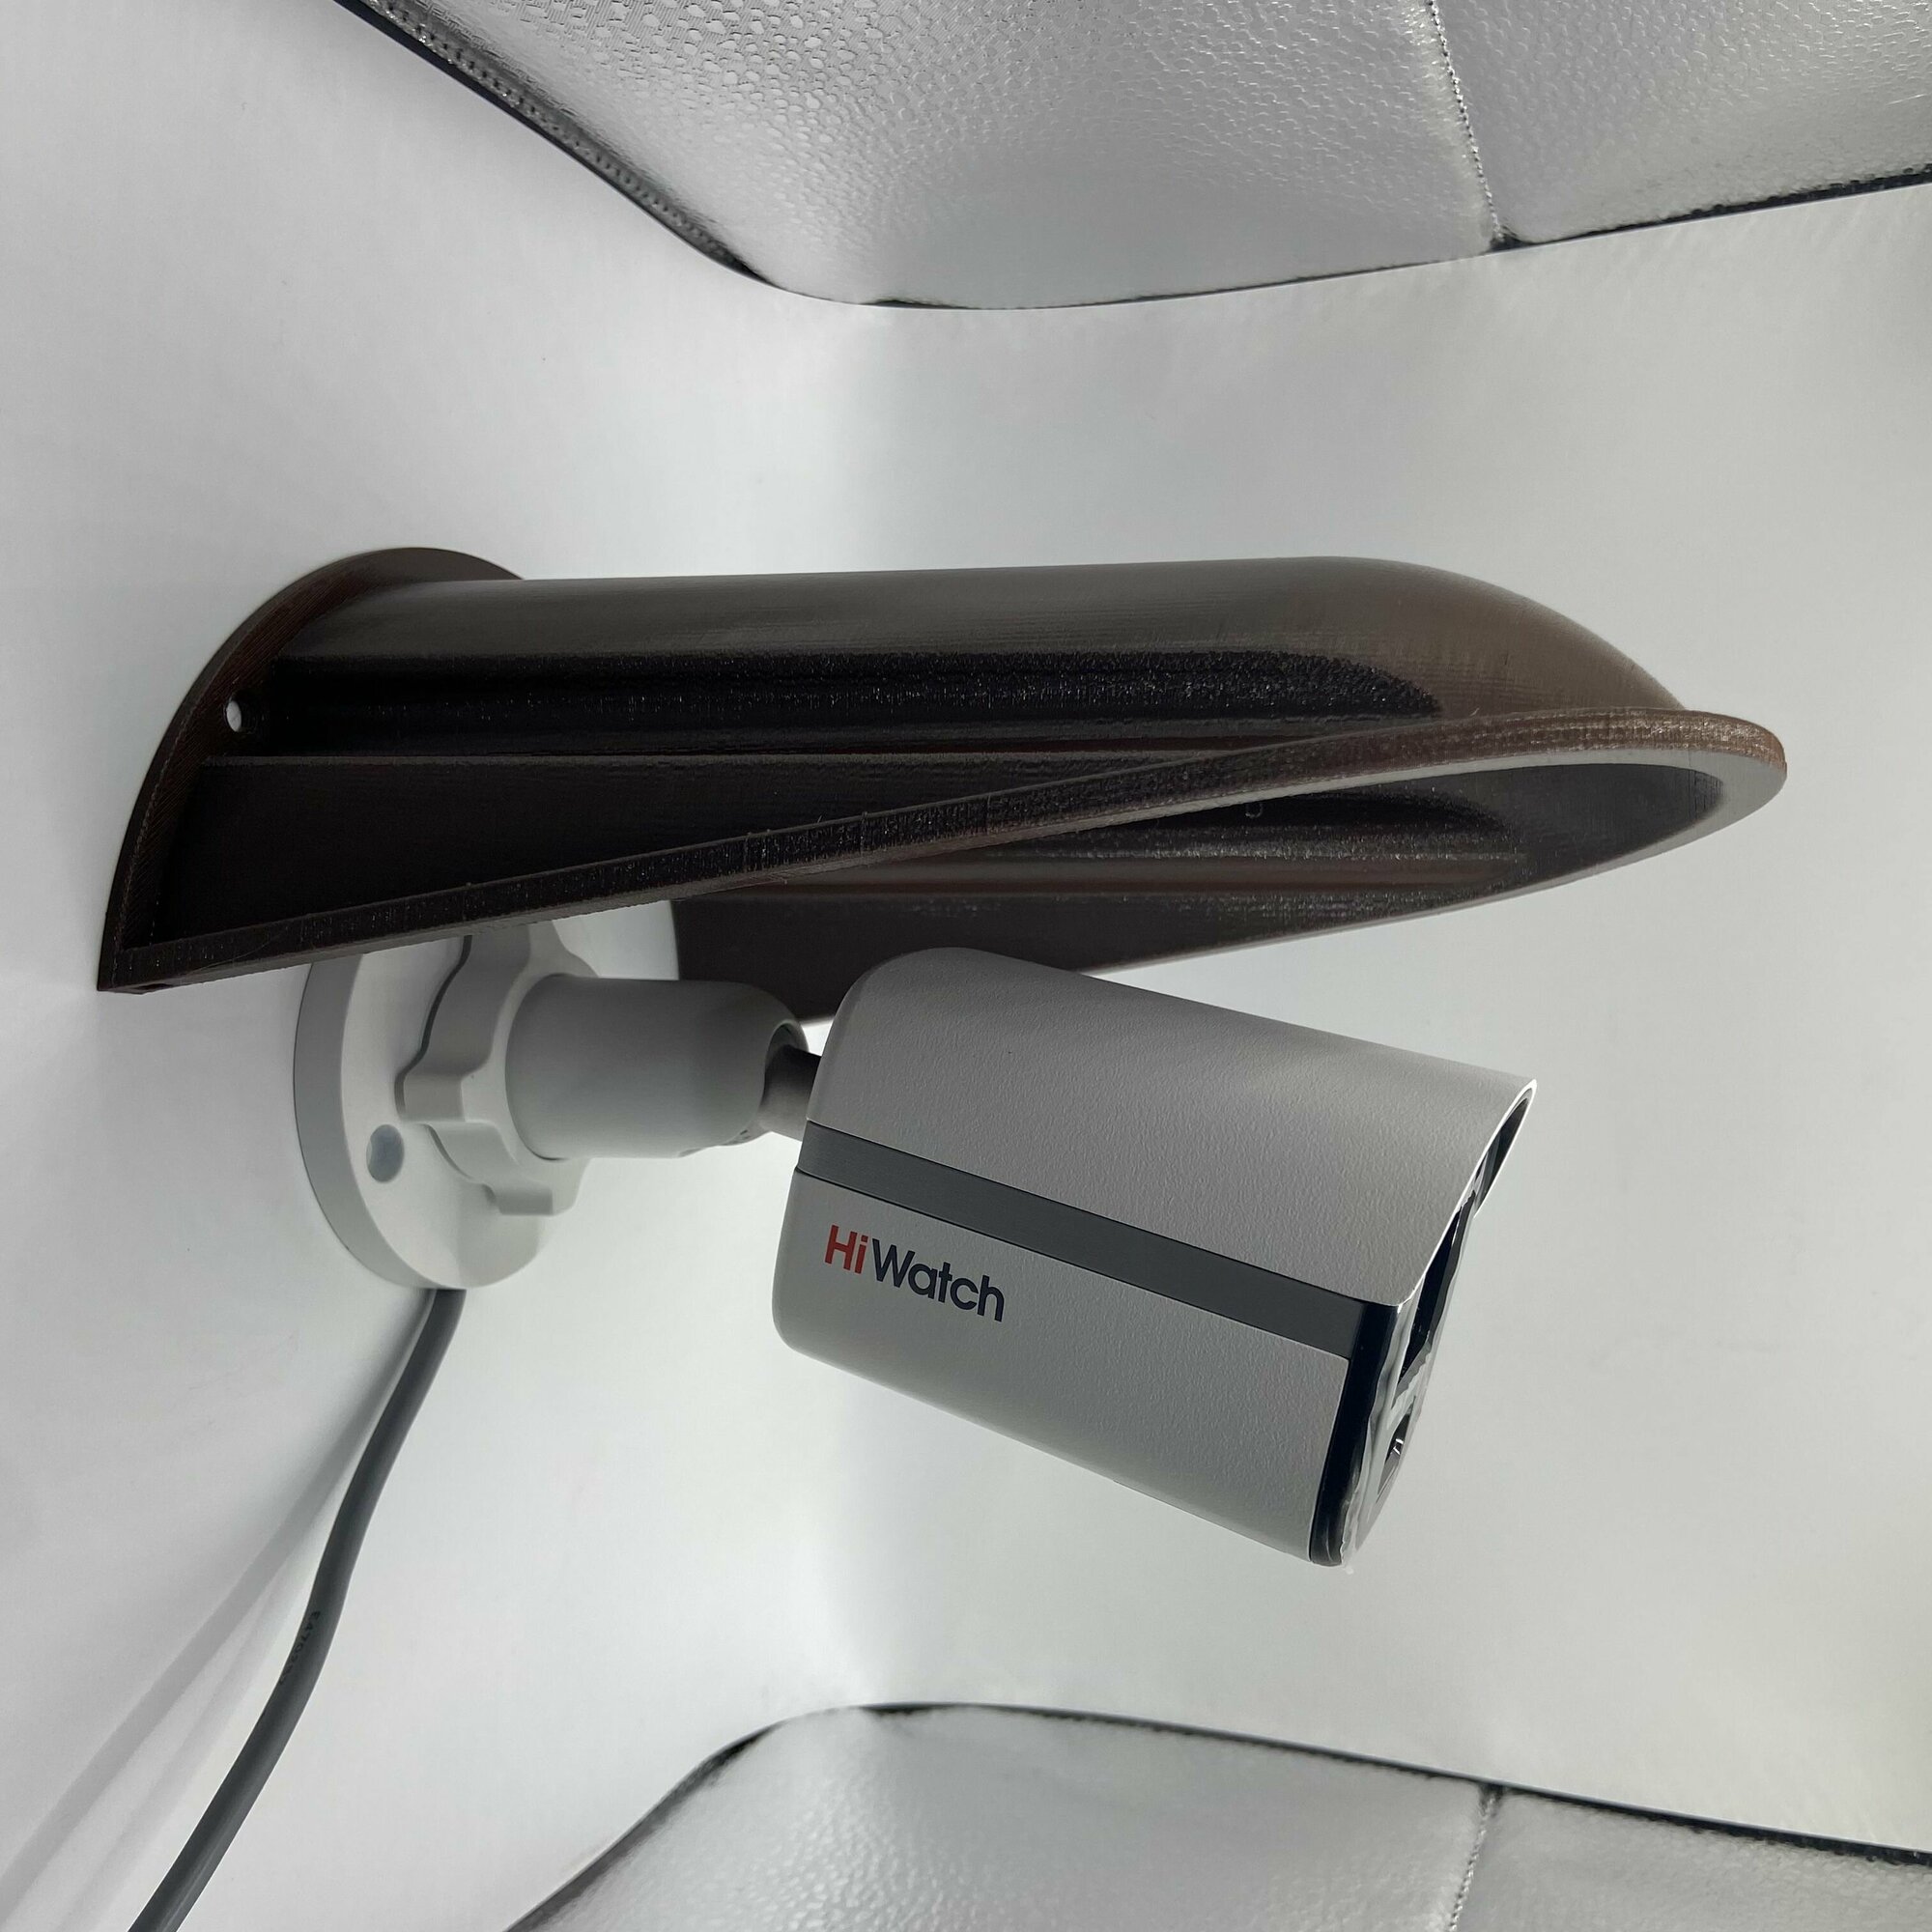 Защитный козырек для камеры видеонаблюдения Ракушка-XL 3D-печать HIKVISION HIWATCH DAHUA (коричневый) защита камеры от дождя, льда, снега